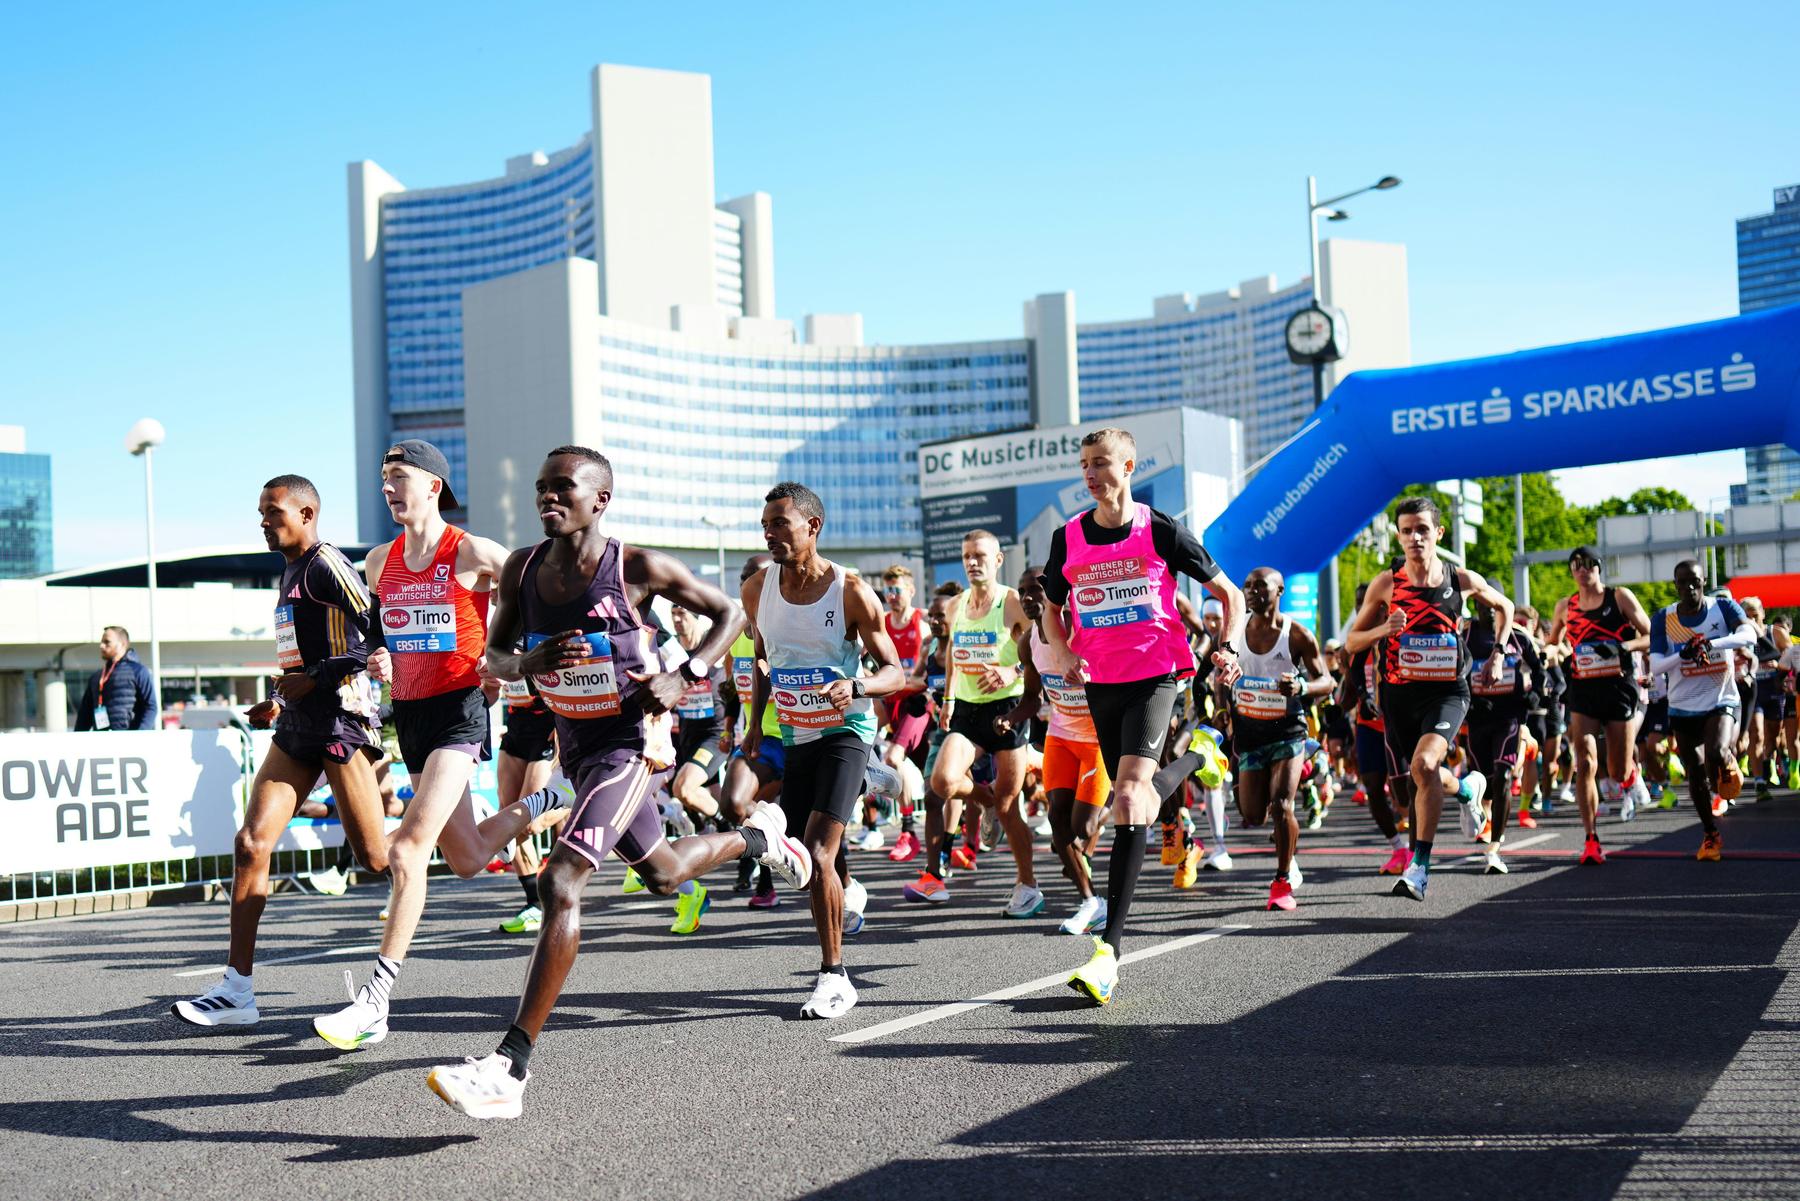 wien-marathon: ein äthiopier siegt, ein wiener gewinnt